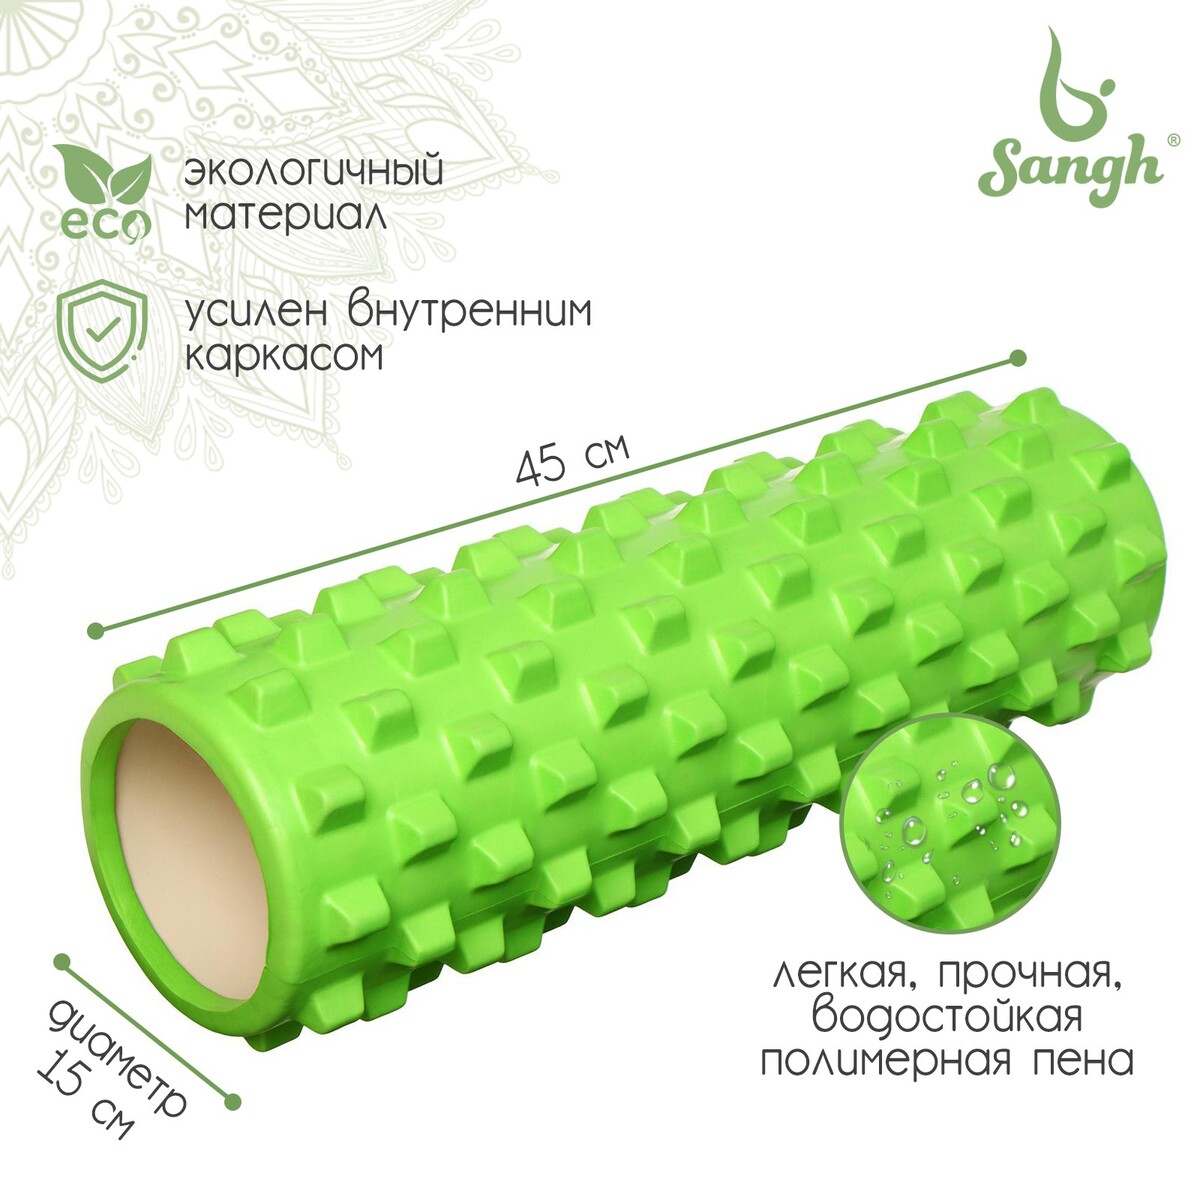 Ролик массажный sangh, 45х15, цвет зеленый ролик массажный 33x14 cм star fit pro низкая жесткость fa 508 зеленый камуфляж оранжевый